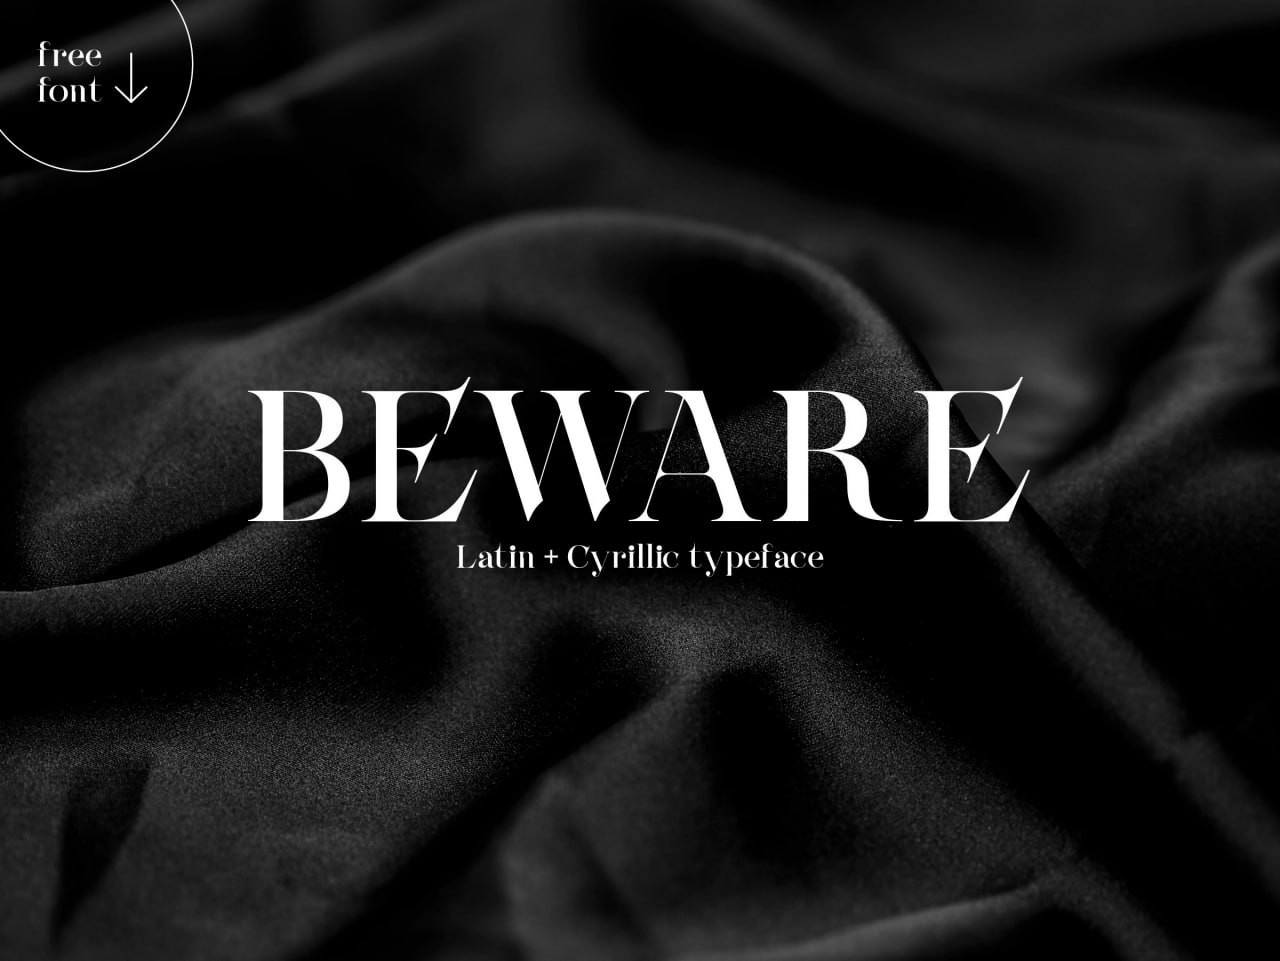 Beware时尚的英文衬线字体 设计素材 第1张